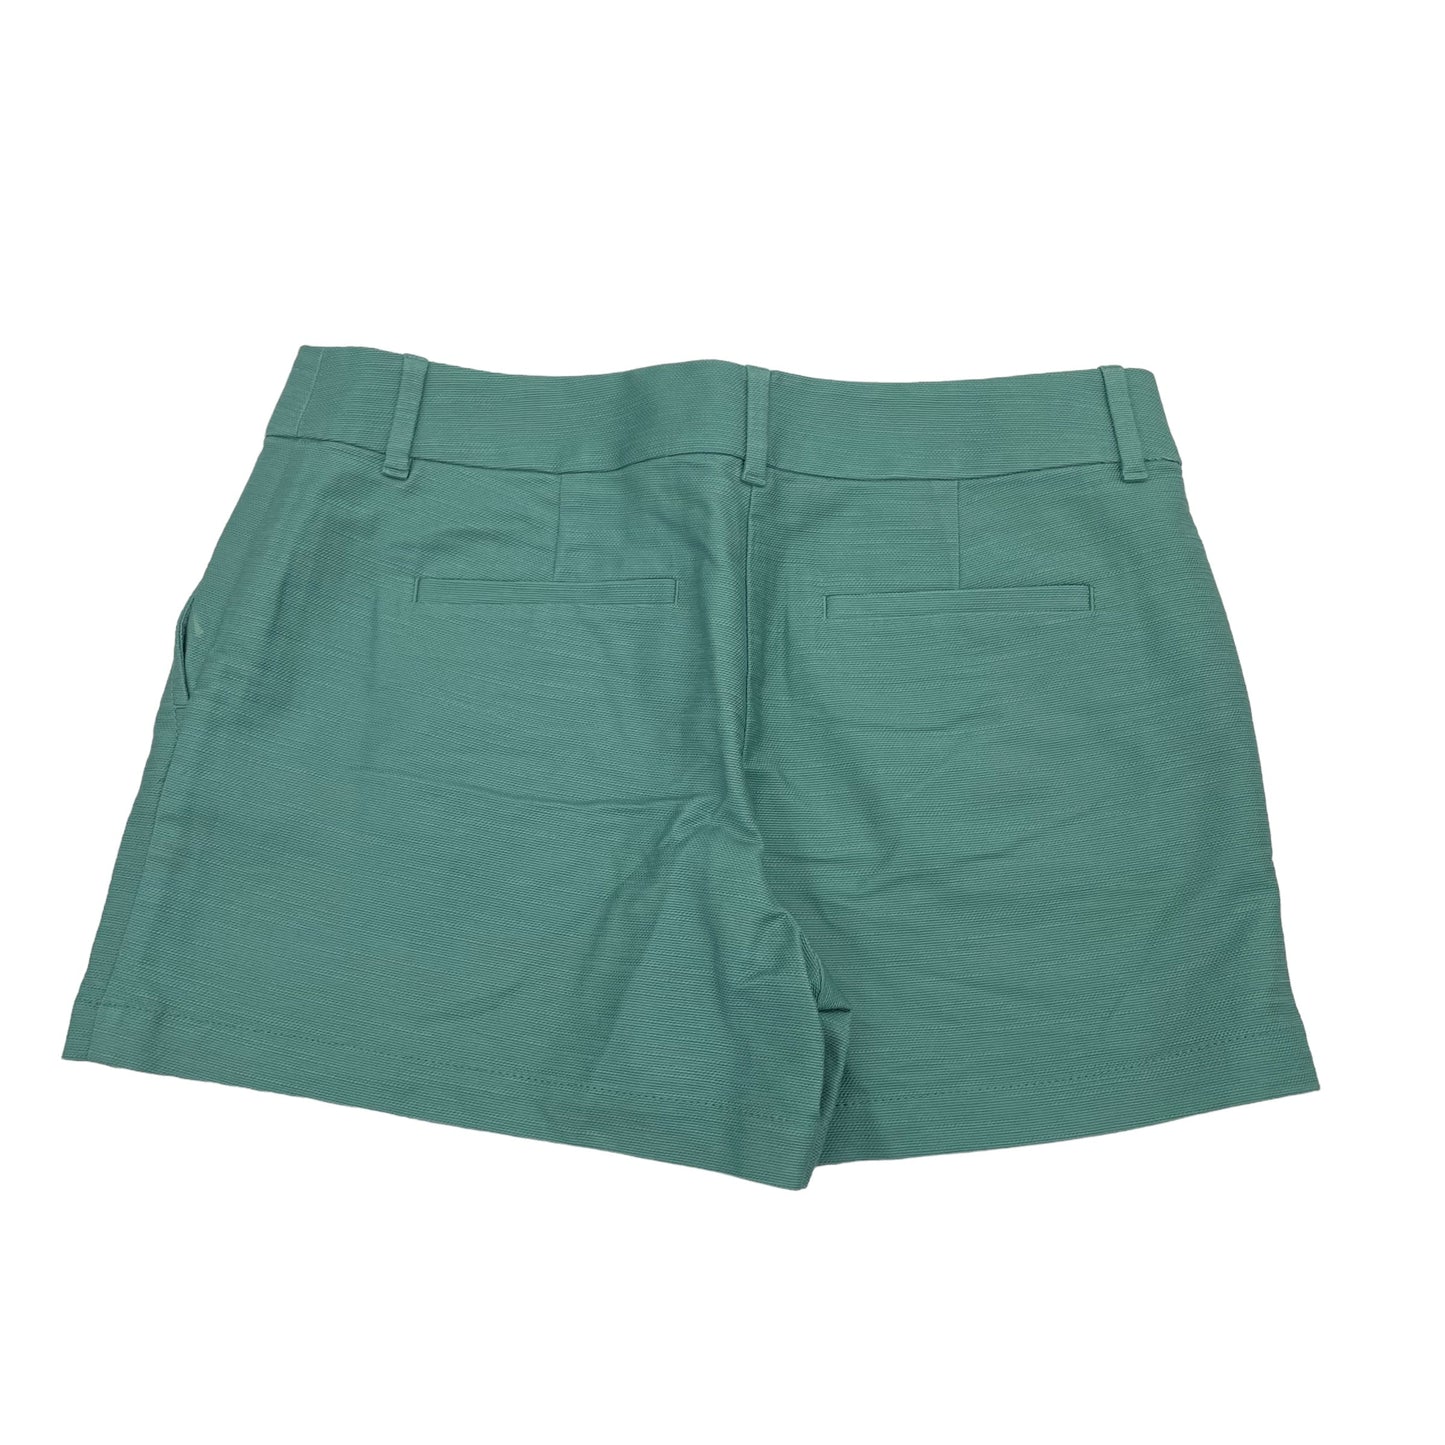 Green Shorts Loft, Size 6